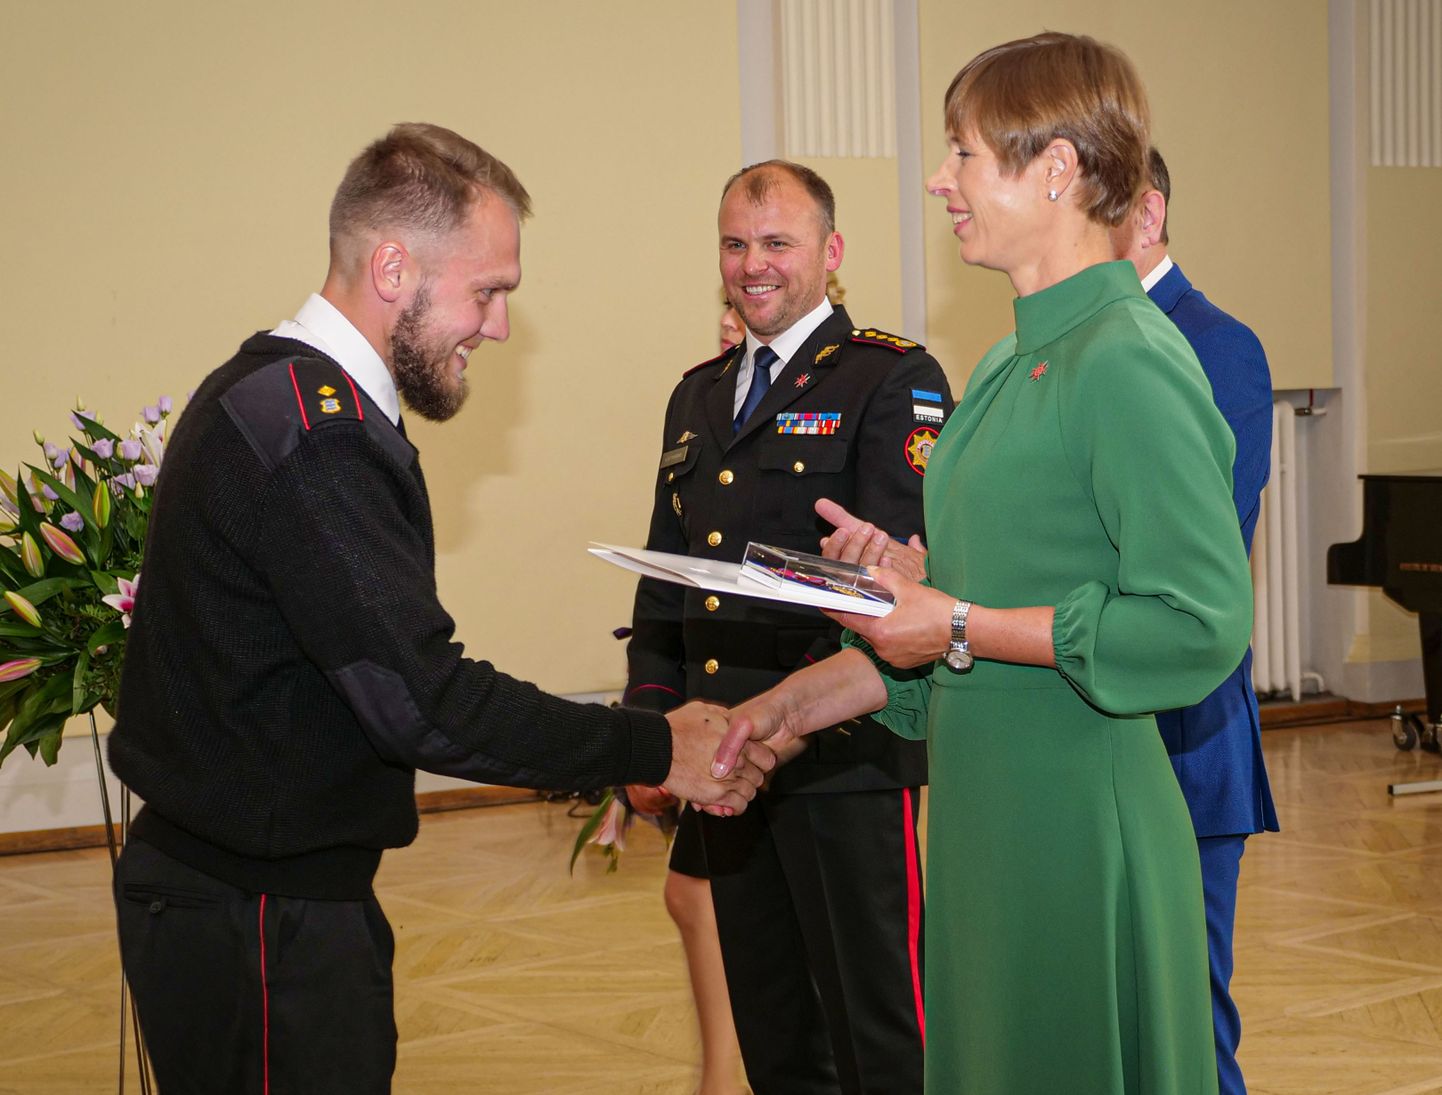 KÄEPIGISTUS PRESIDENDILT: Mihkel Rauale annab aumärgi üle president Kersti Kaljulaid, tagaplaanil rõõmustab päästeameti peadirektor Kuno Tammearu.